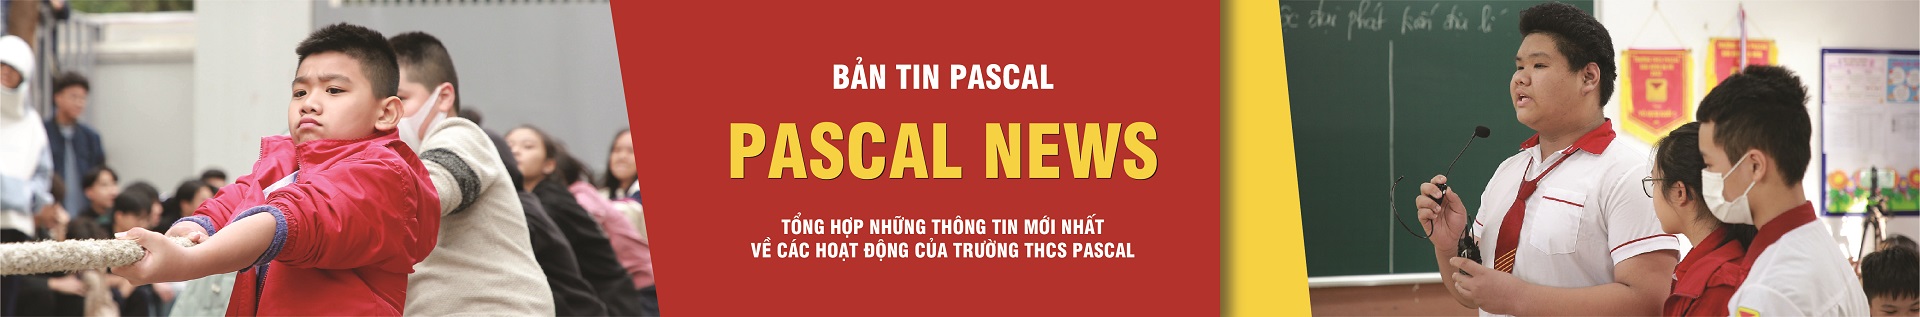 Bản tin Pascal